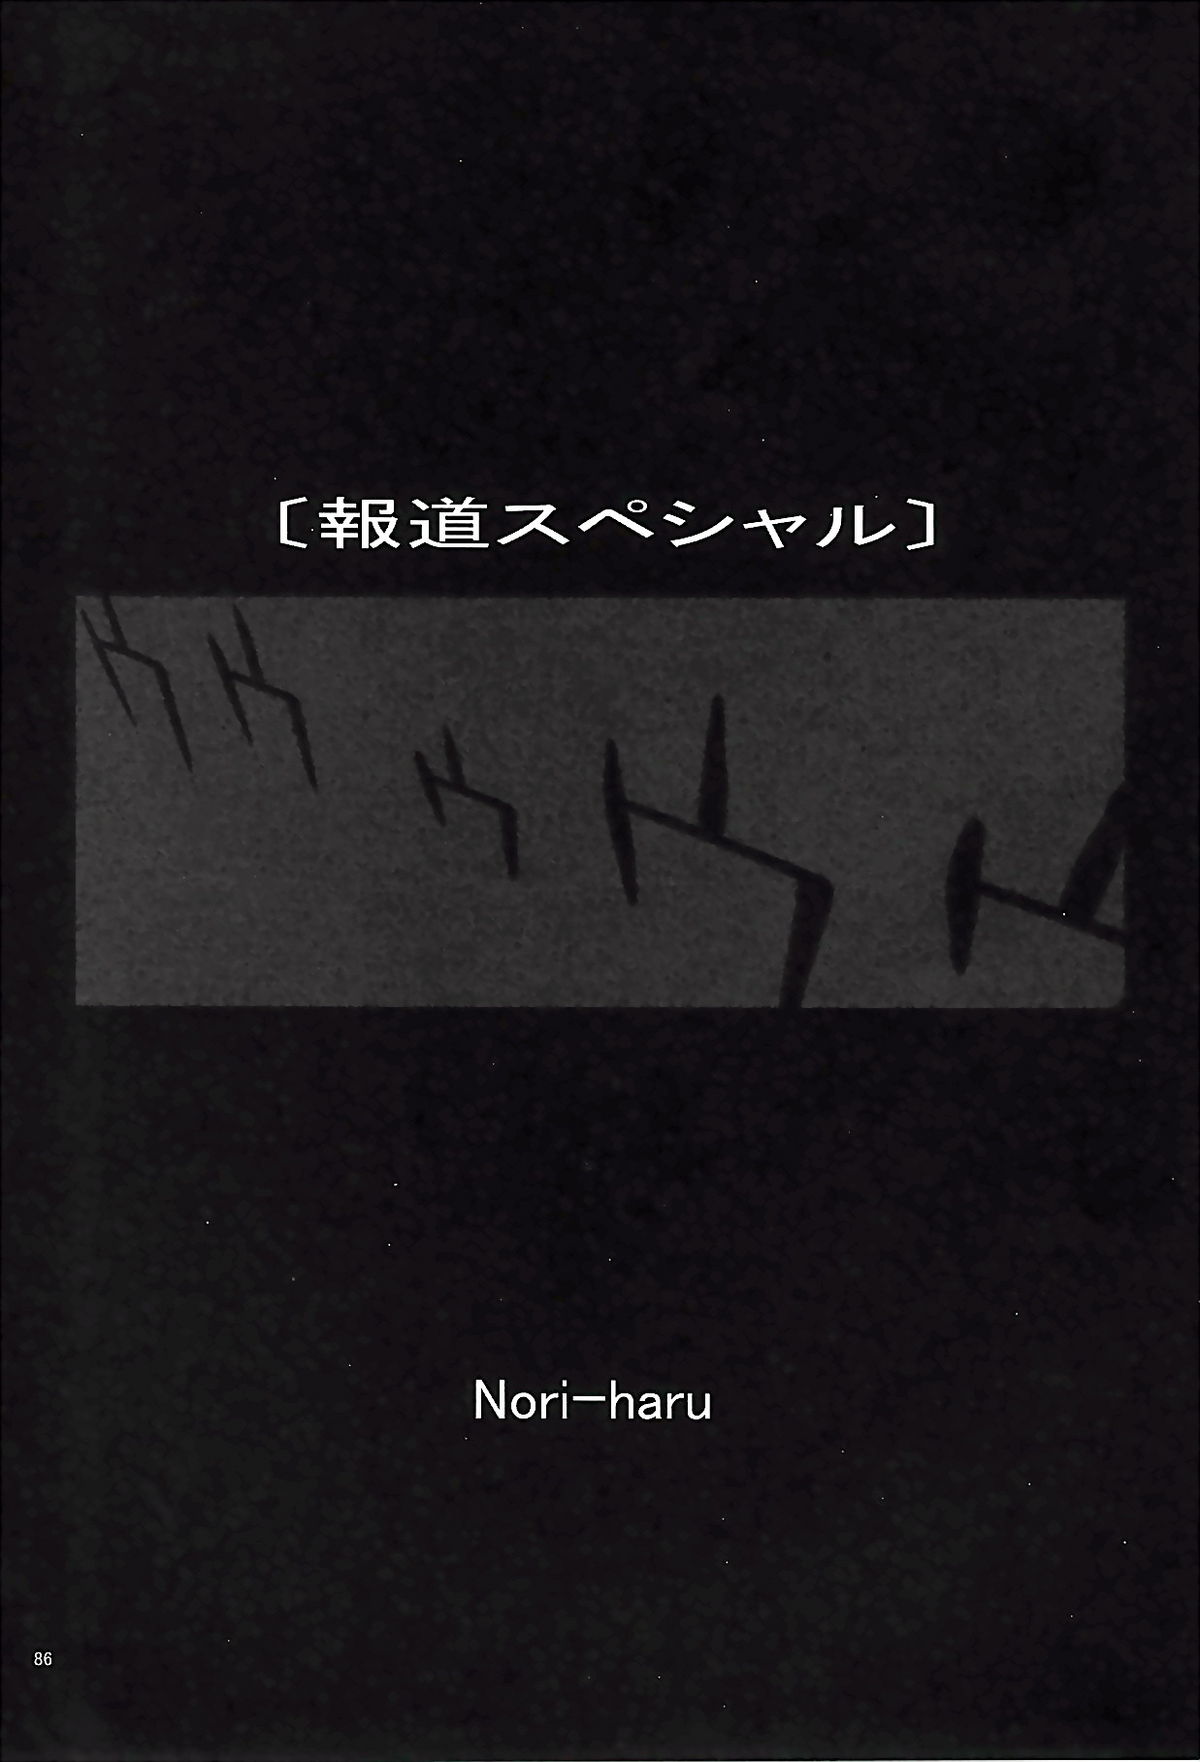 [P-Collection] NORI-HARU COMPLETE 1 